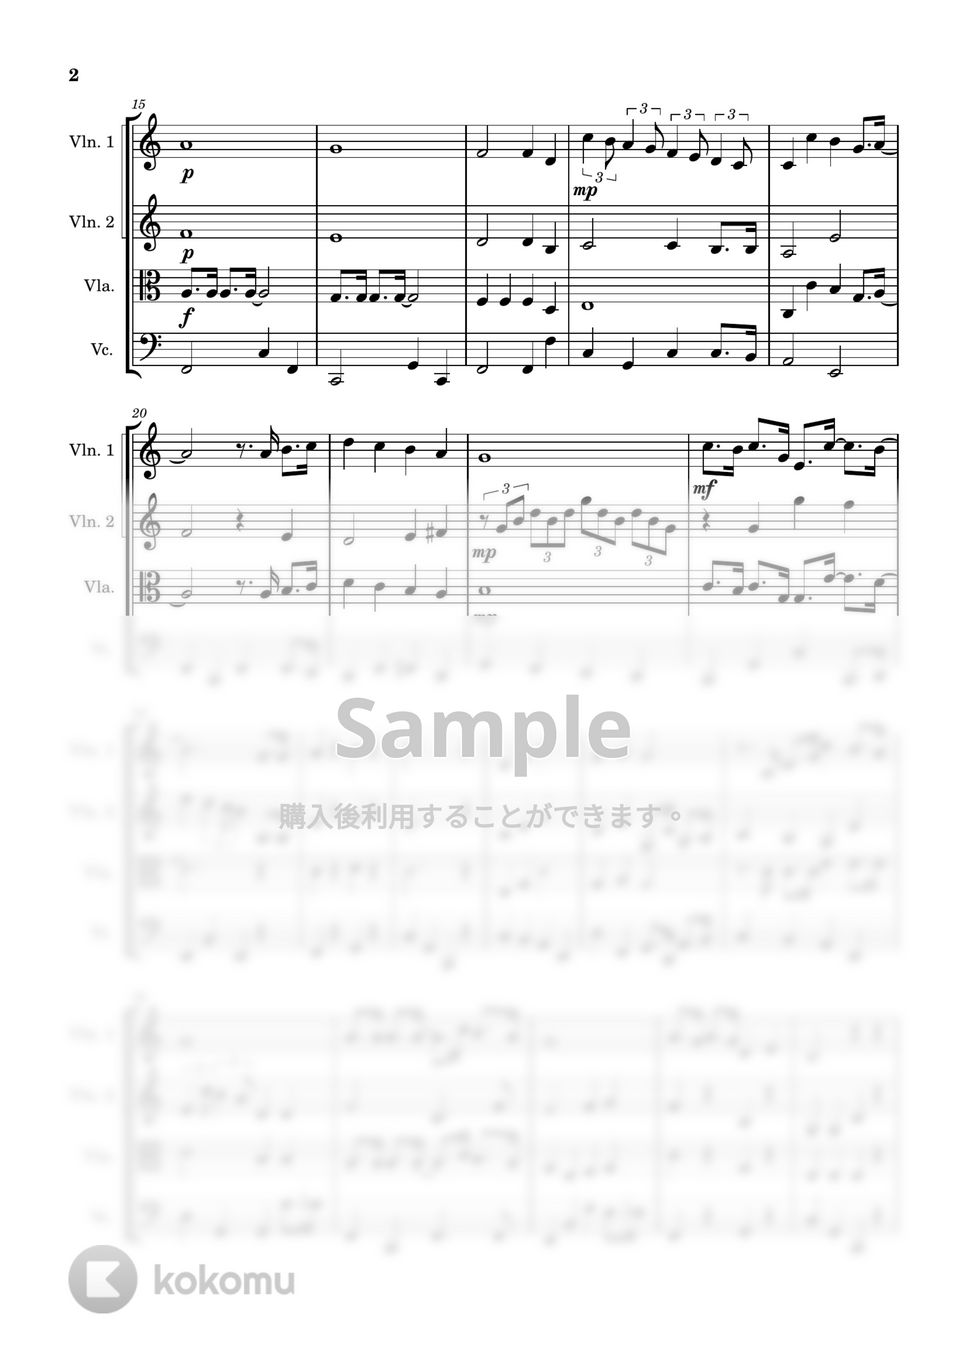 久石譲 - さんぽ (弦楽四重奏) by Cellotto